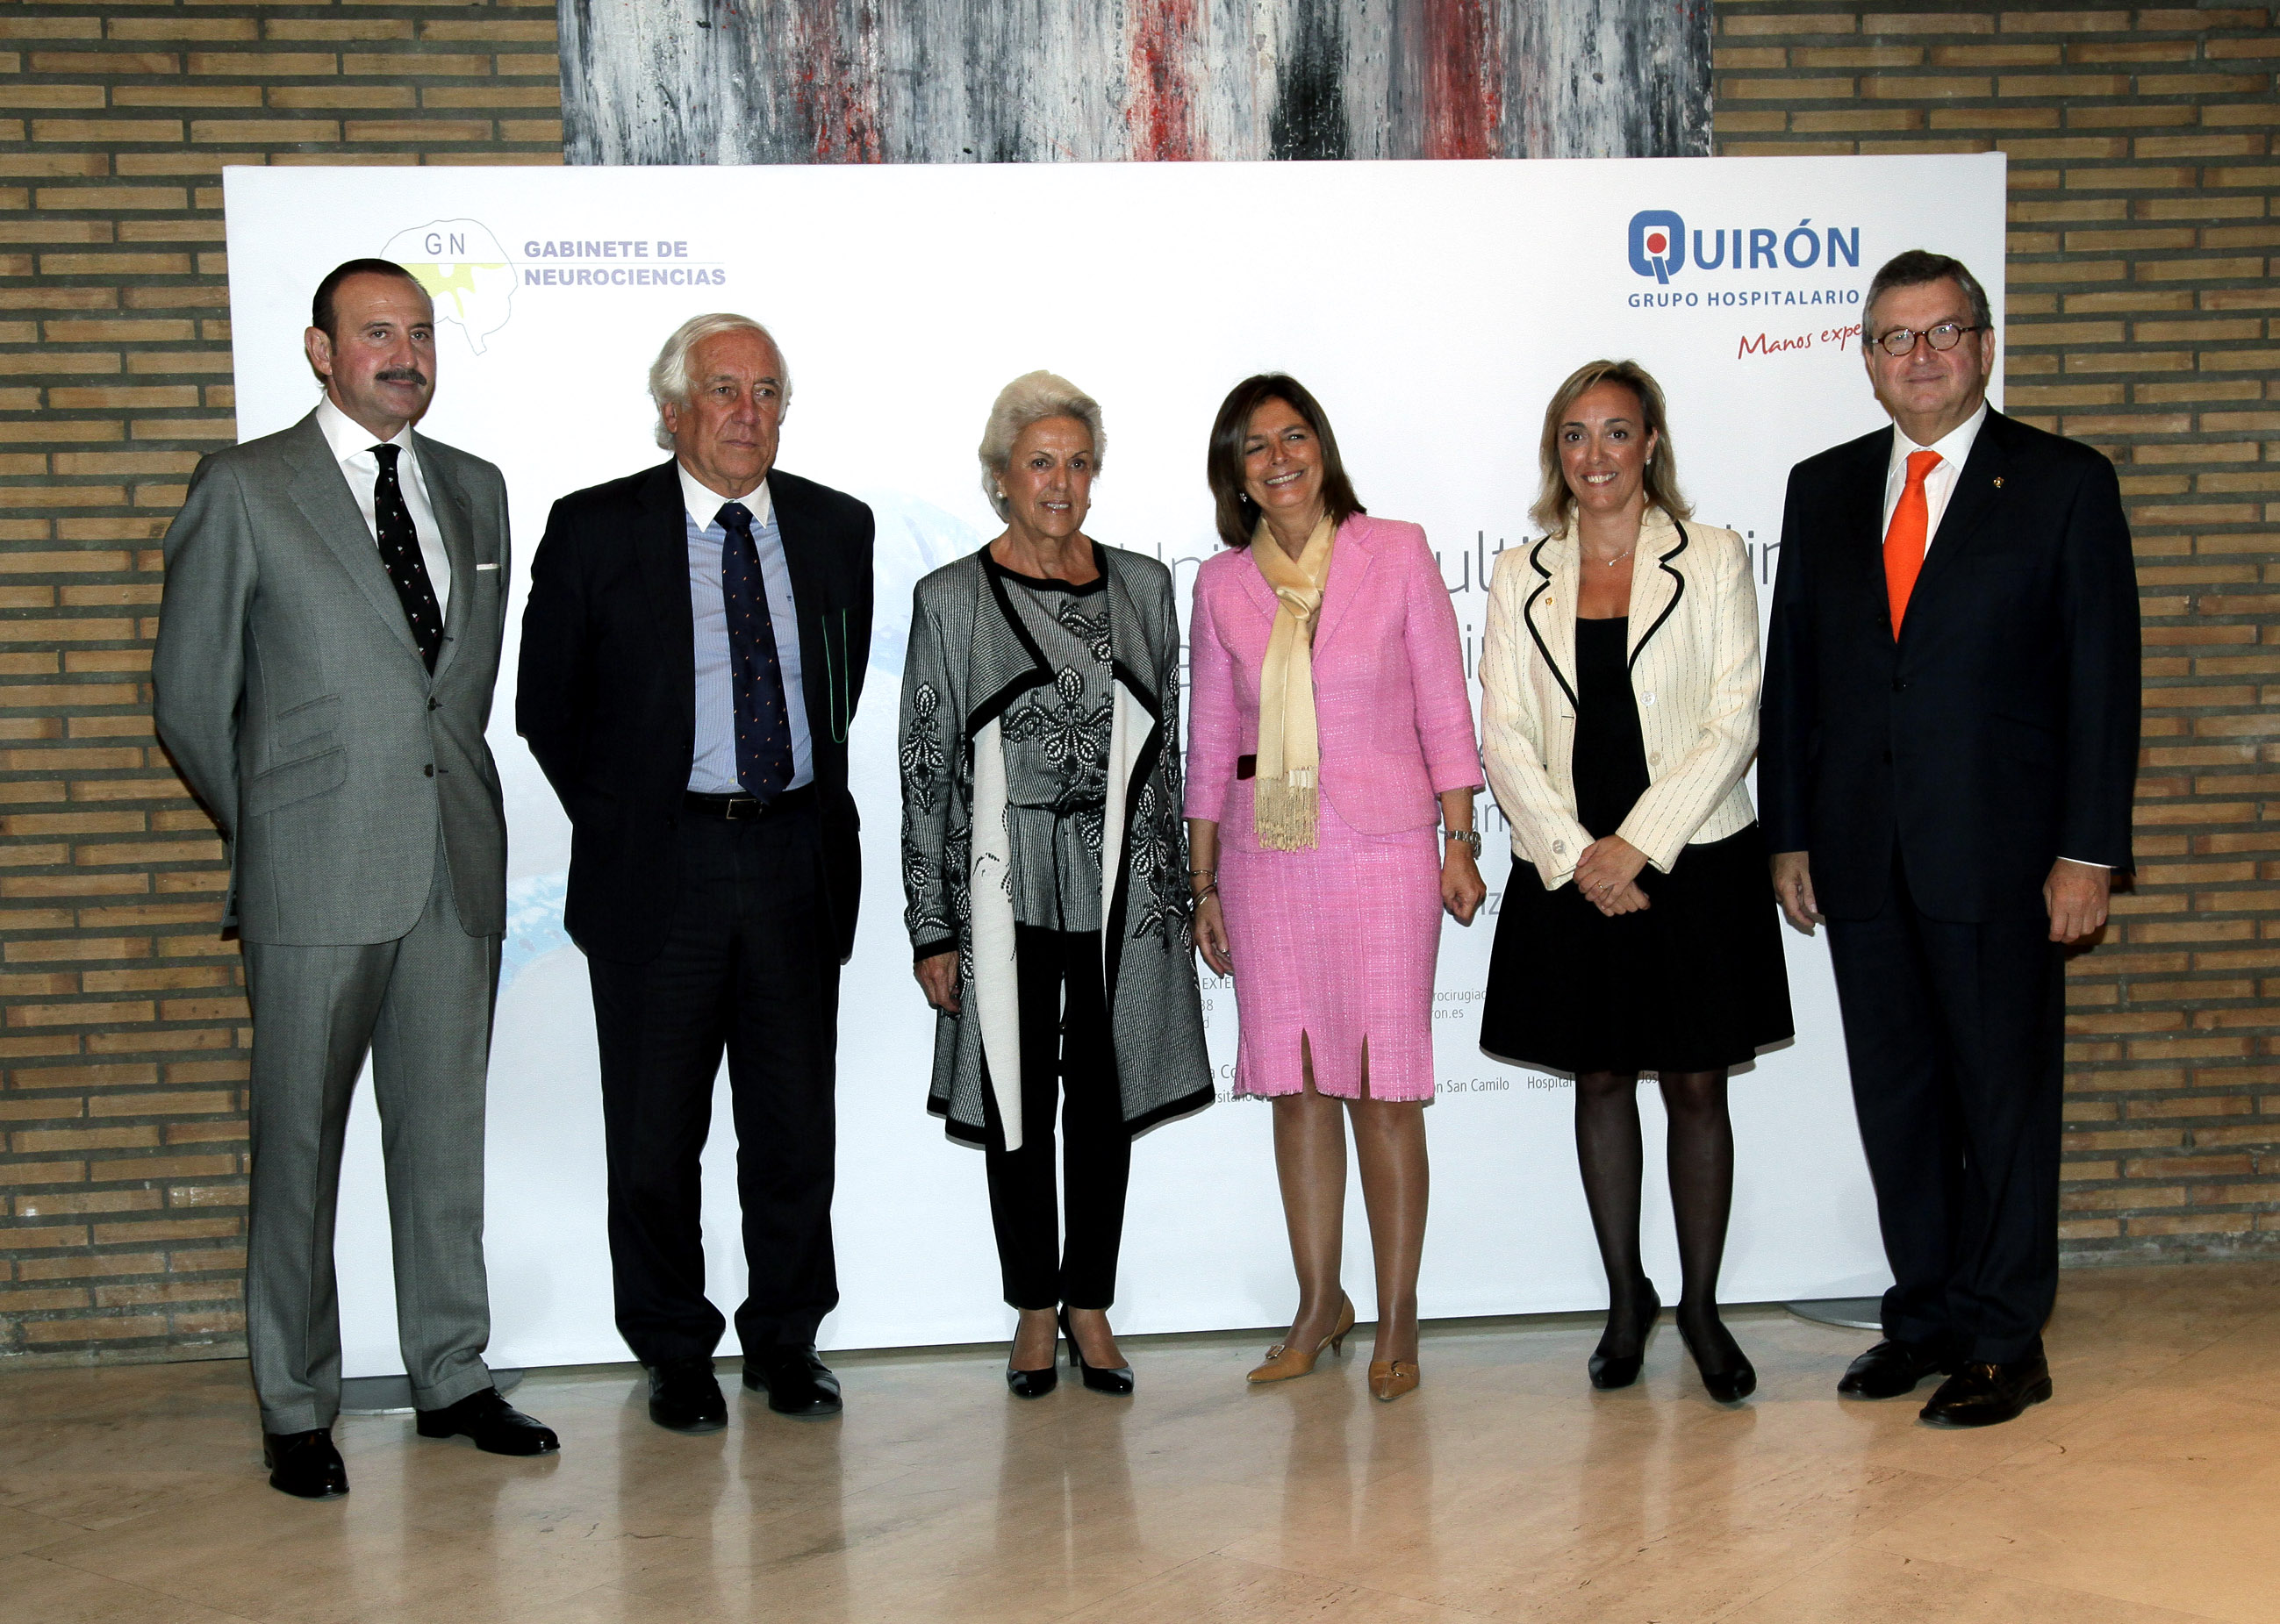 El Hospital Quirón San Camilo (Madrid) inaugura su nueva Unidad Multidisciplinar de Neurocirugía